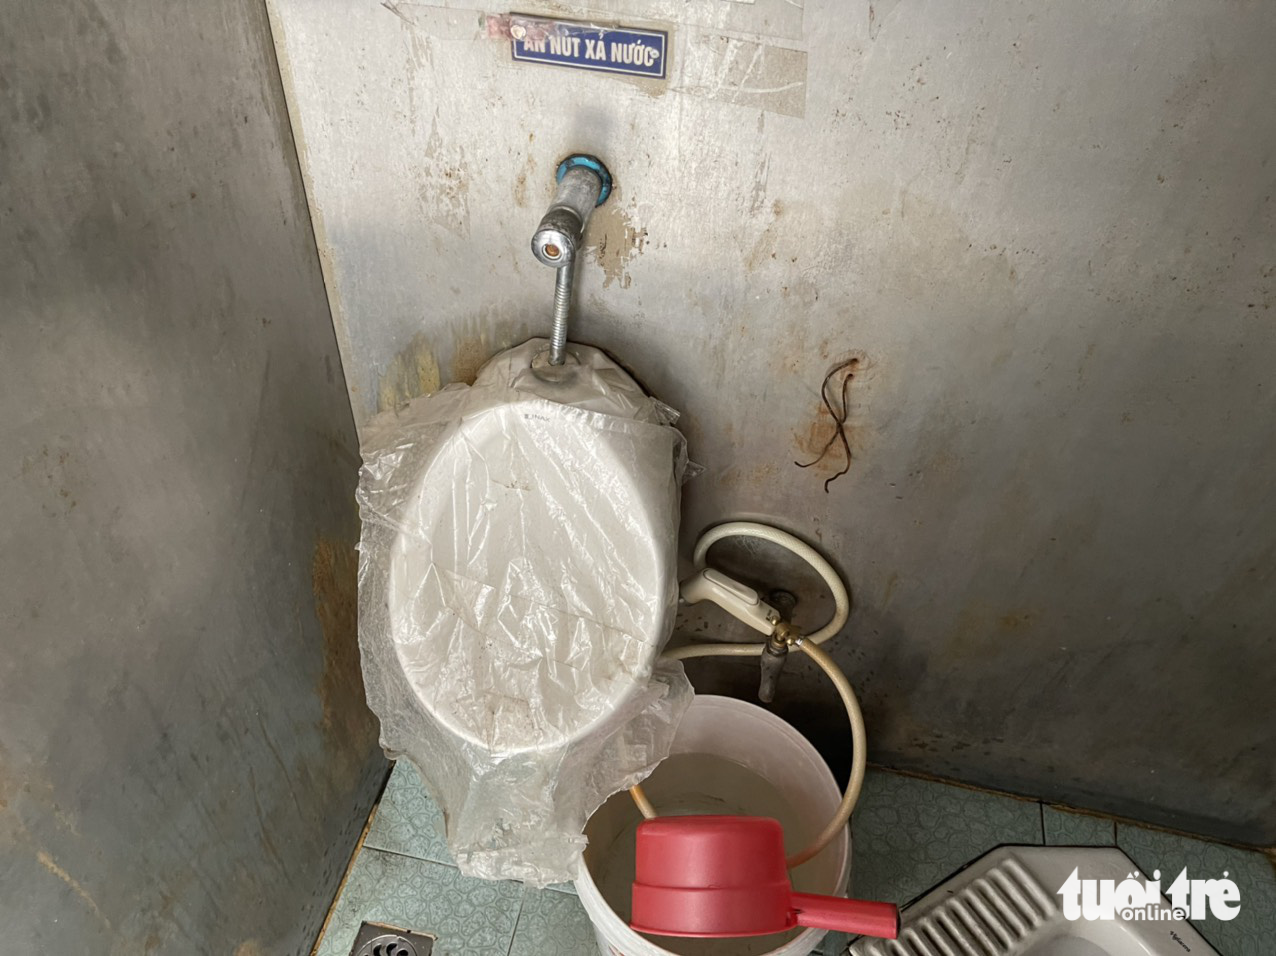 Nhiều nhà vệ sinh công cộng hôi thối, người Hà Nội thấy sợ - Ảnh 3.